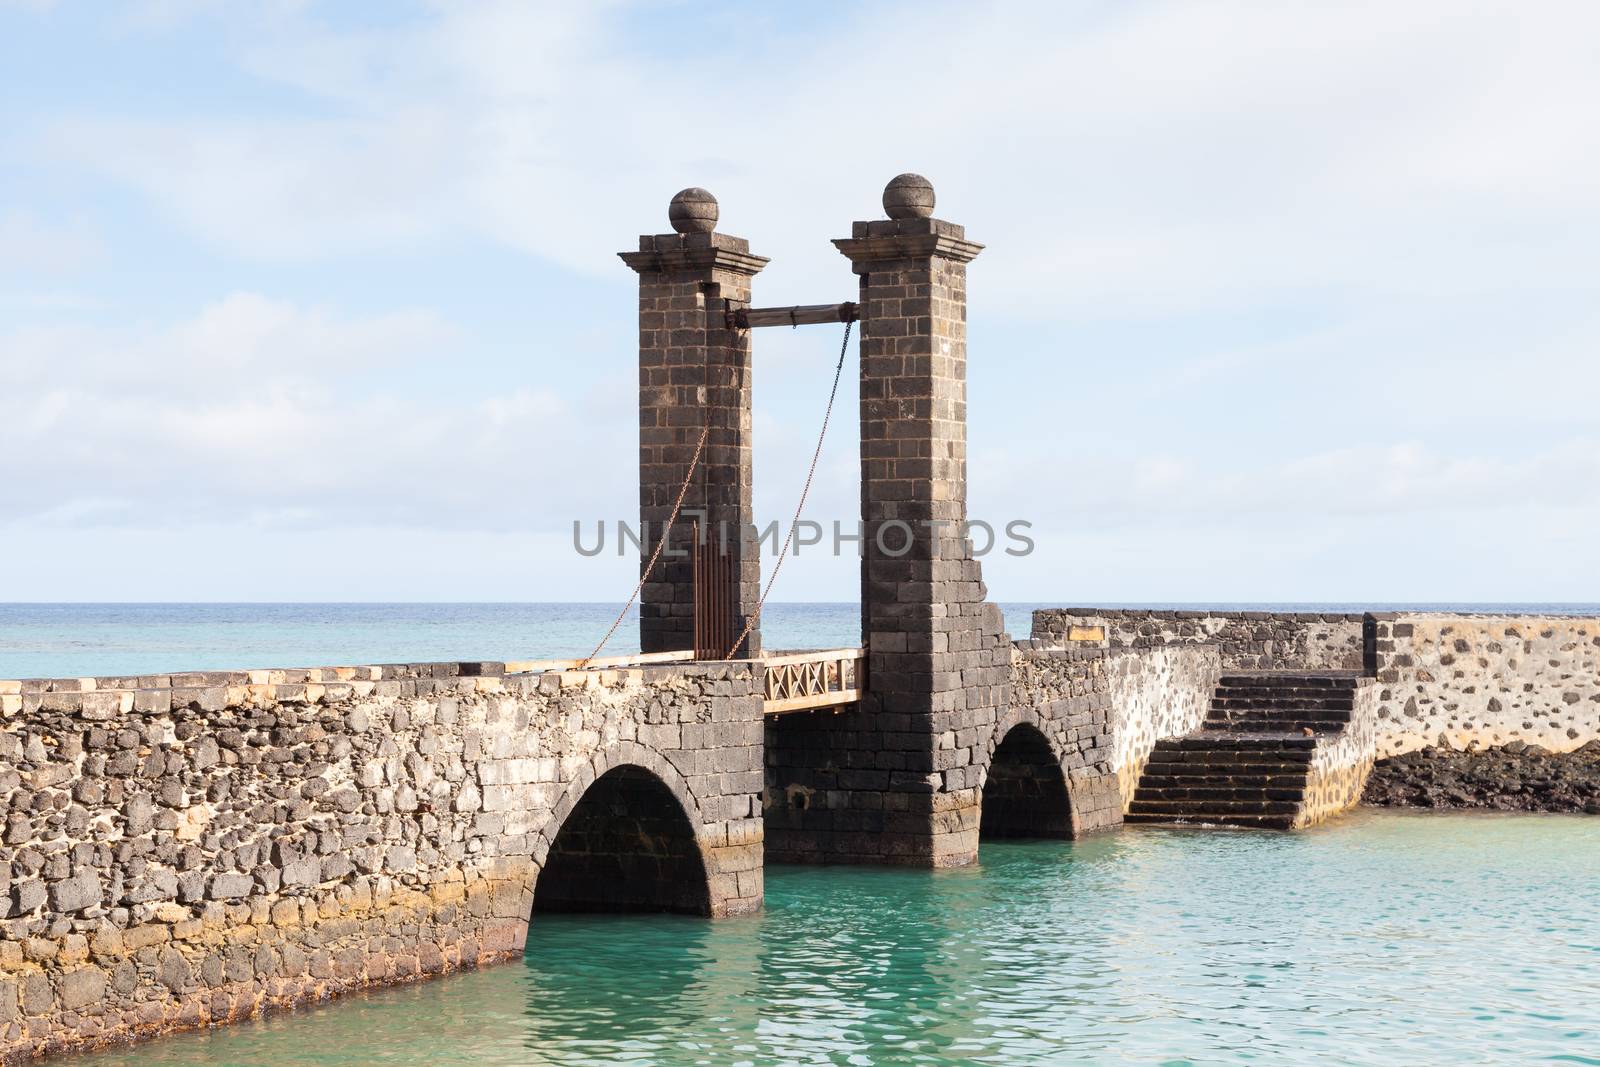 Puente de las Bolas leads to San Gabriel Castle in the port city of Arrecife on the Spanish island of Lanzarote.